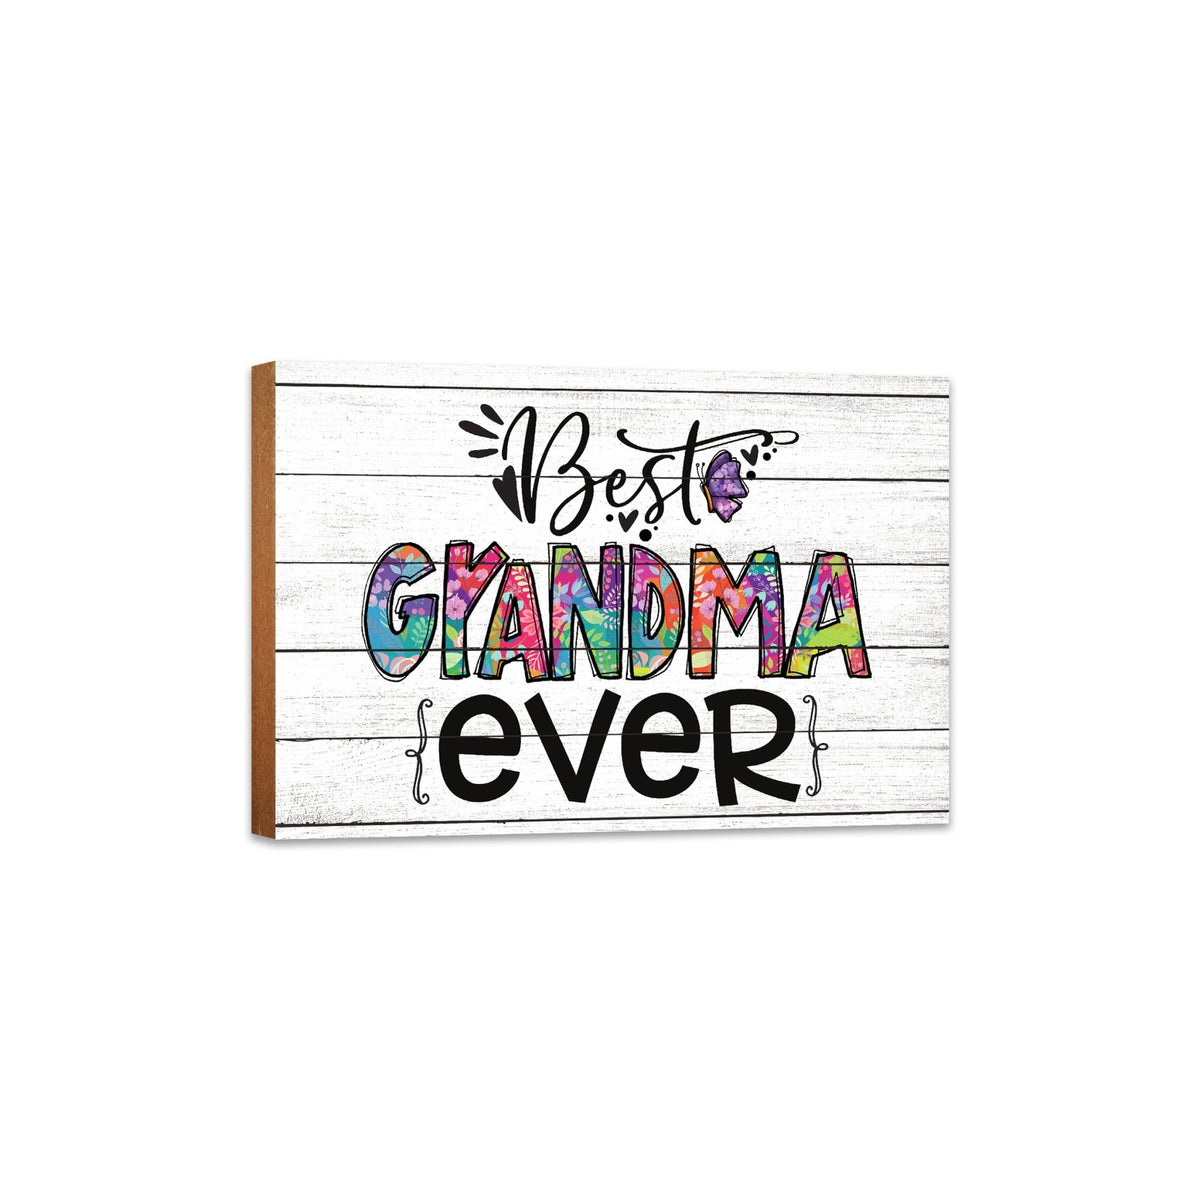 Modern-Inspired White Wooden Graffiti Art Shelf Sitter Gift Idea &amp; Home Décor - Best Grandma Ever - LifeSong Milestones